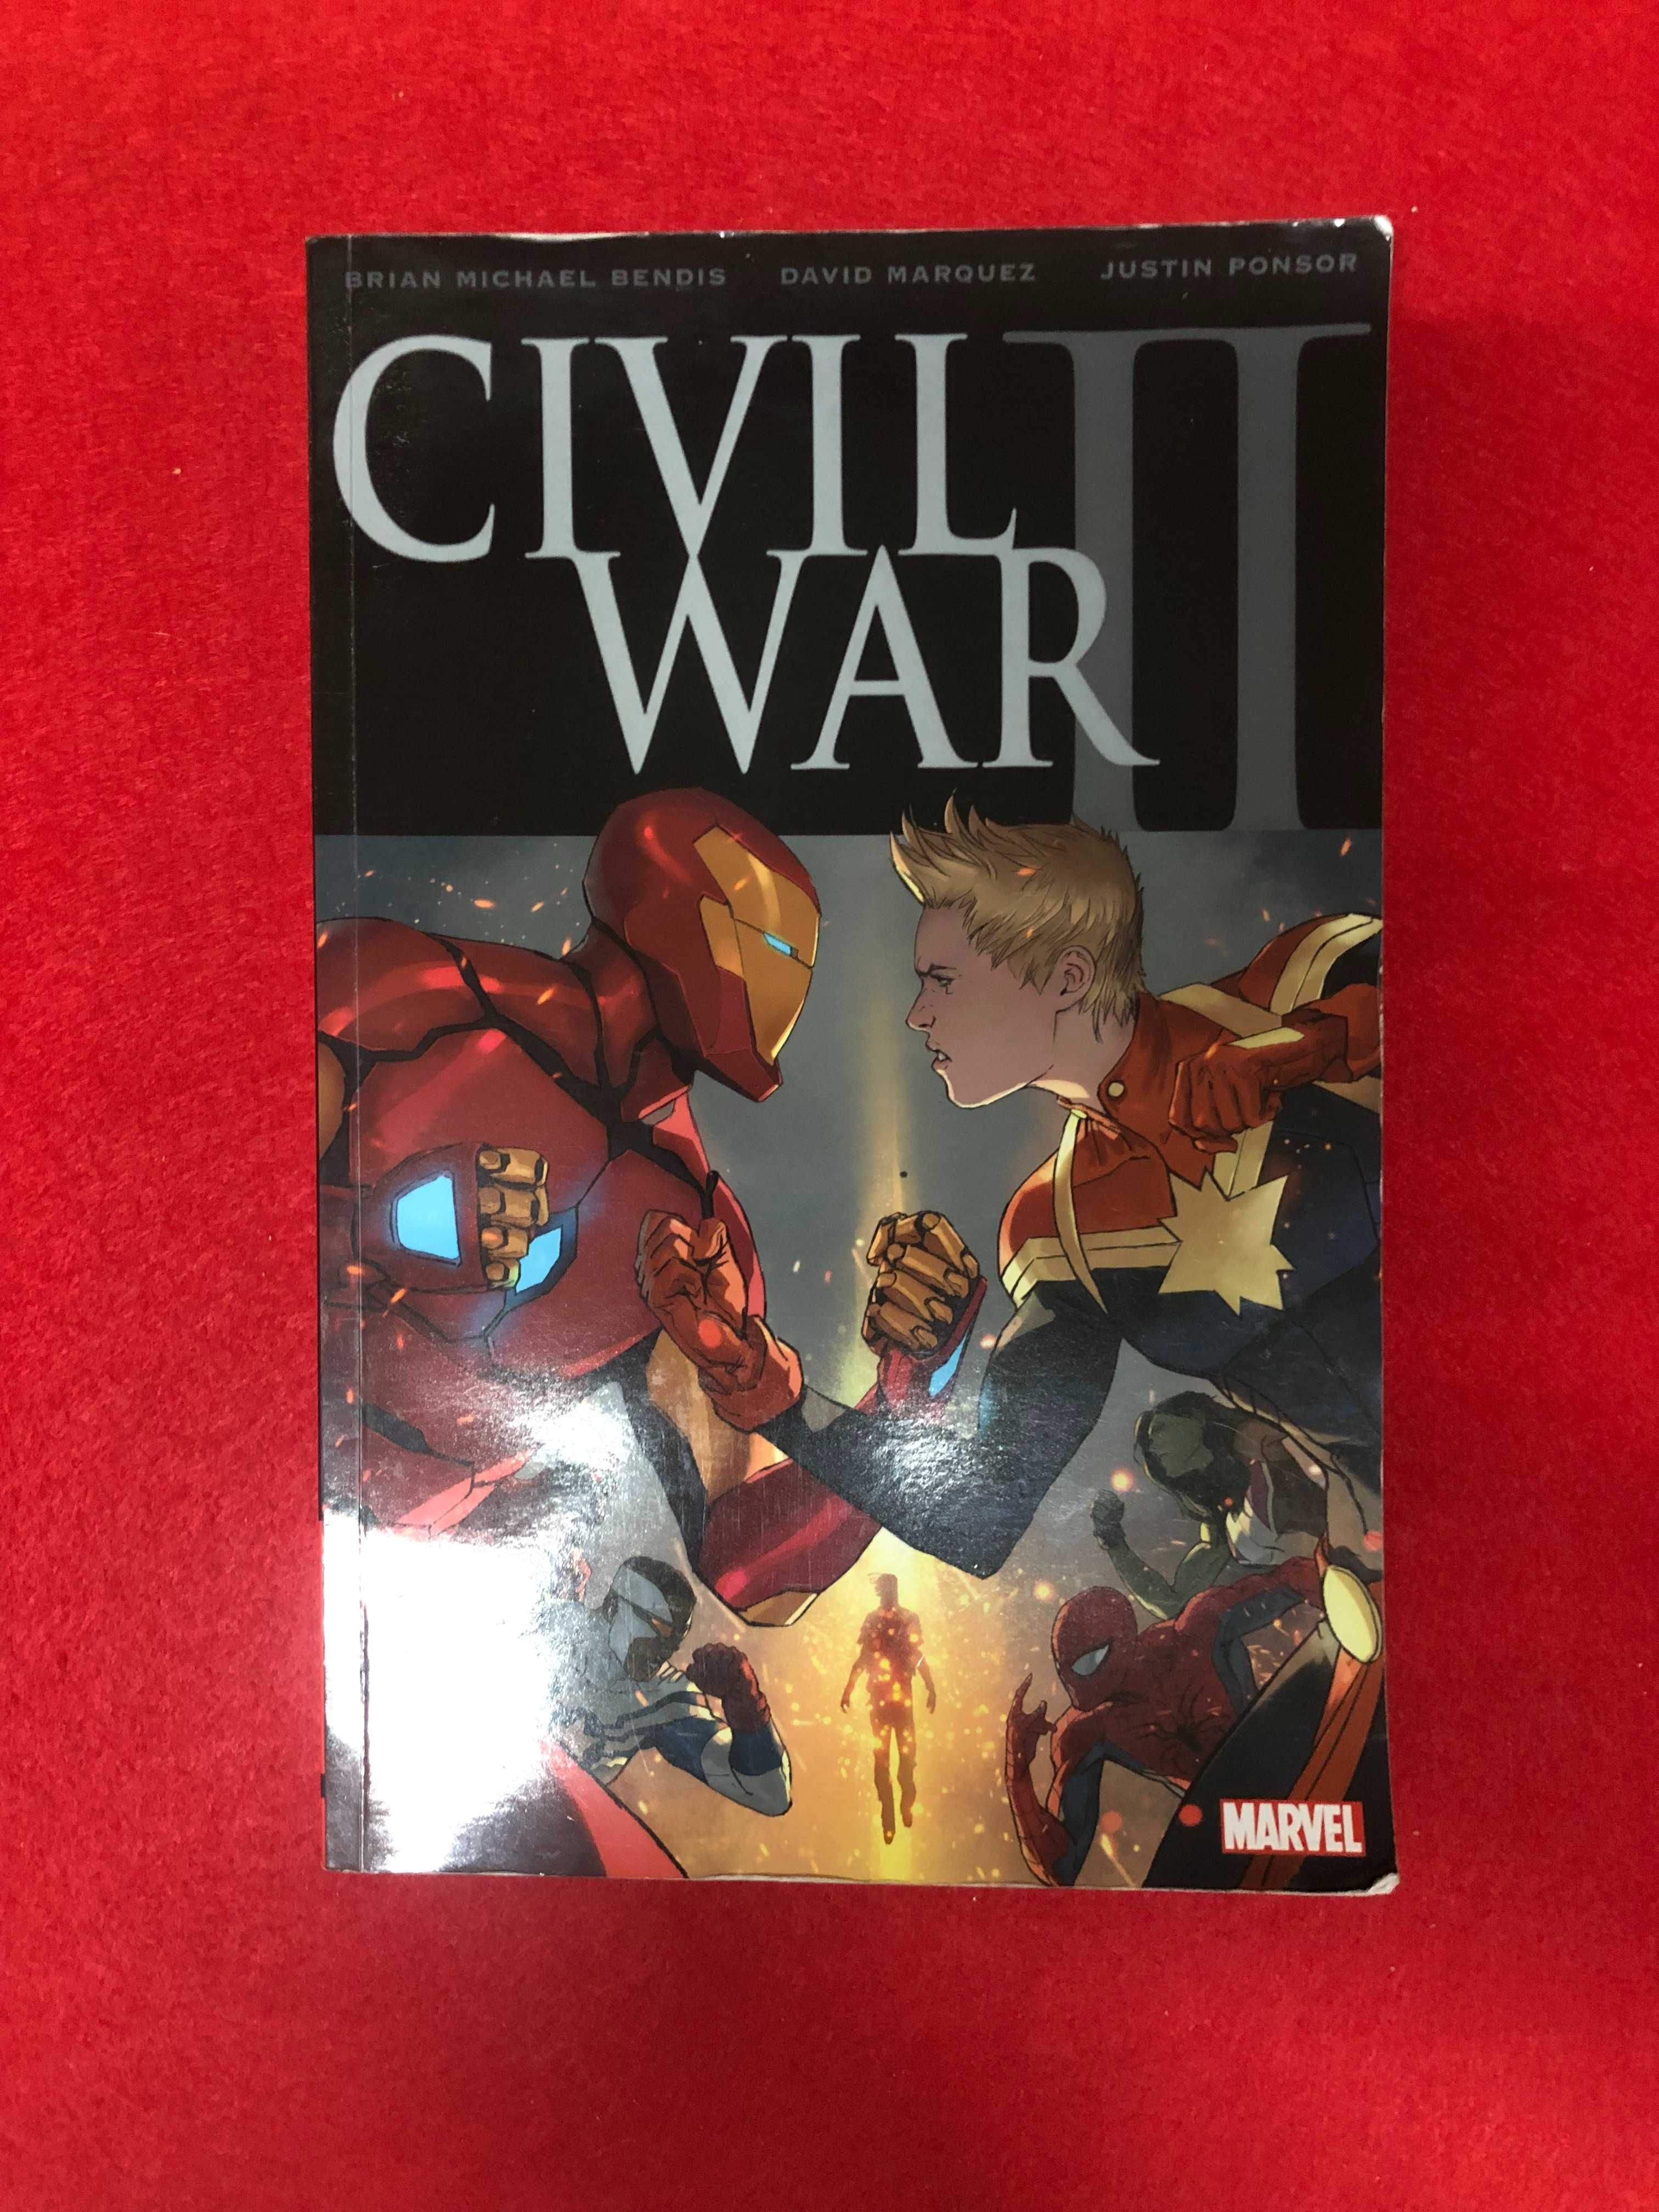 Civil war II - Marvel